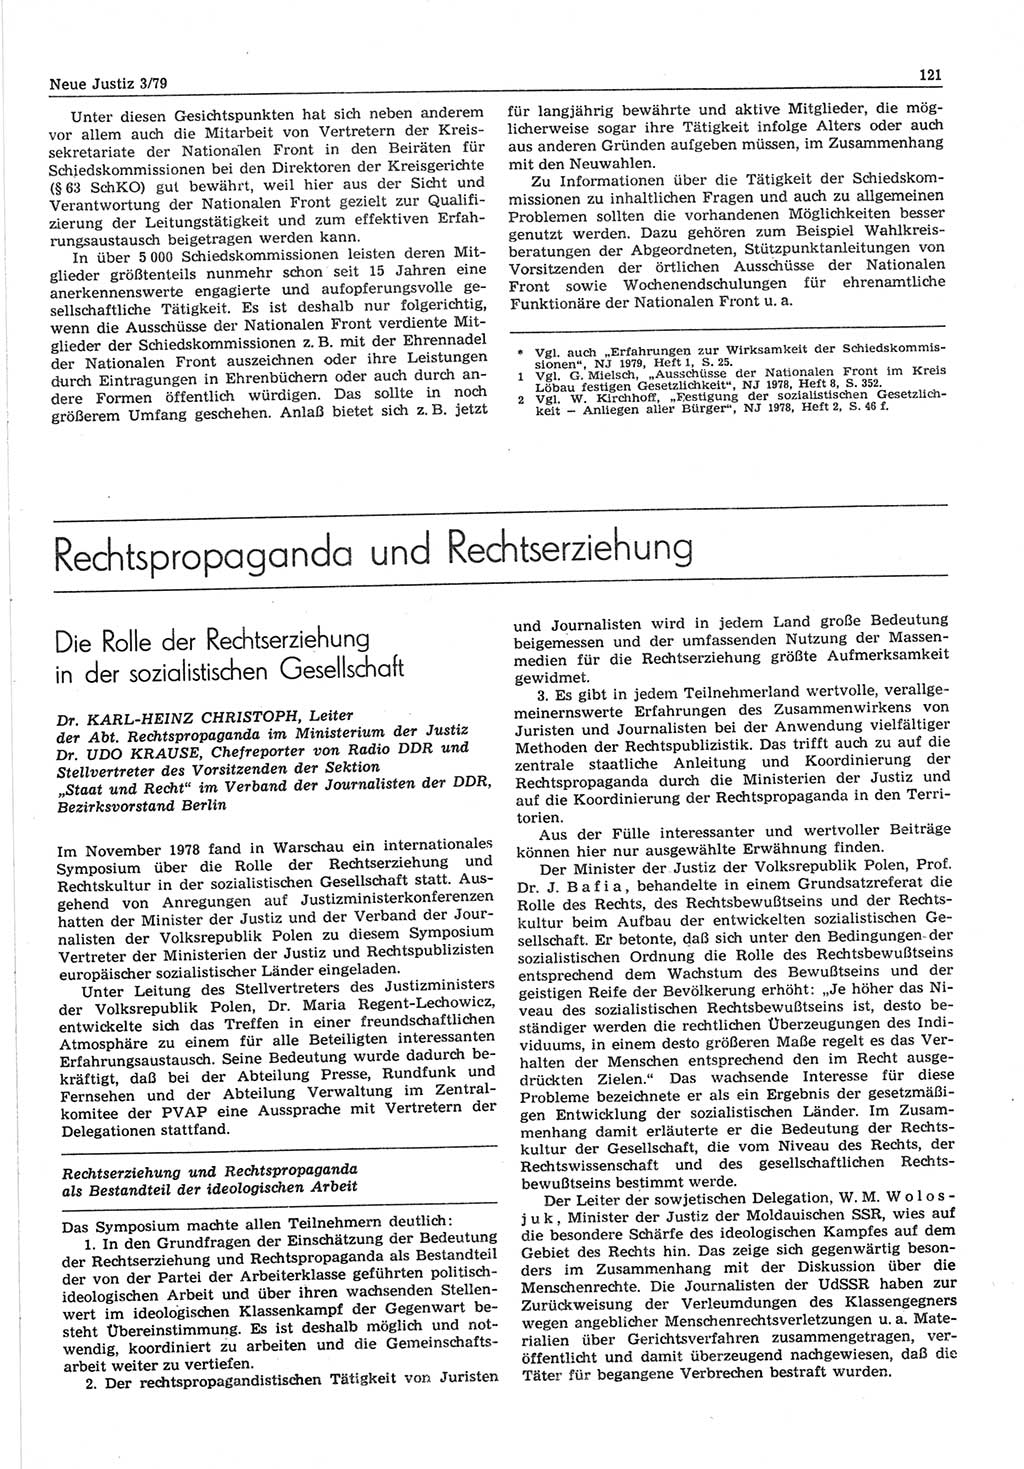 Neue Justiz (NJ), Zeitschrift für sozialistisches Recht und Gesetzlichkeit [Deutsche Demokratische Republik (DDR)], 33. Jahrgang 1979, Seite 121 (NJ DDR 1979, S. 121)